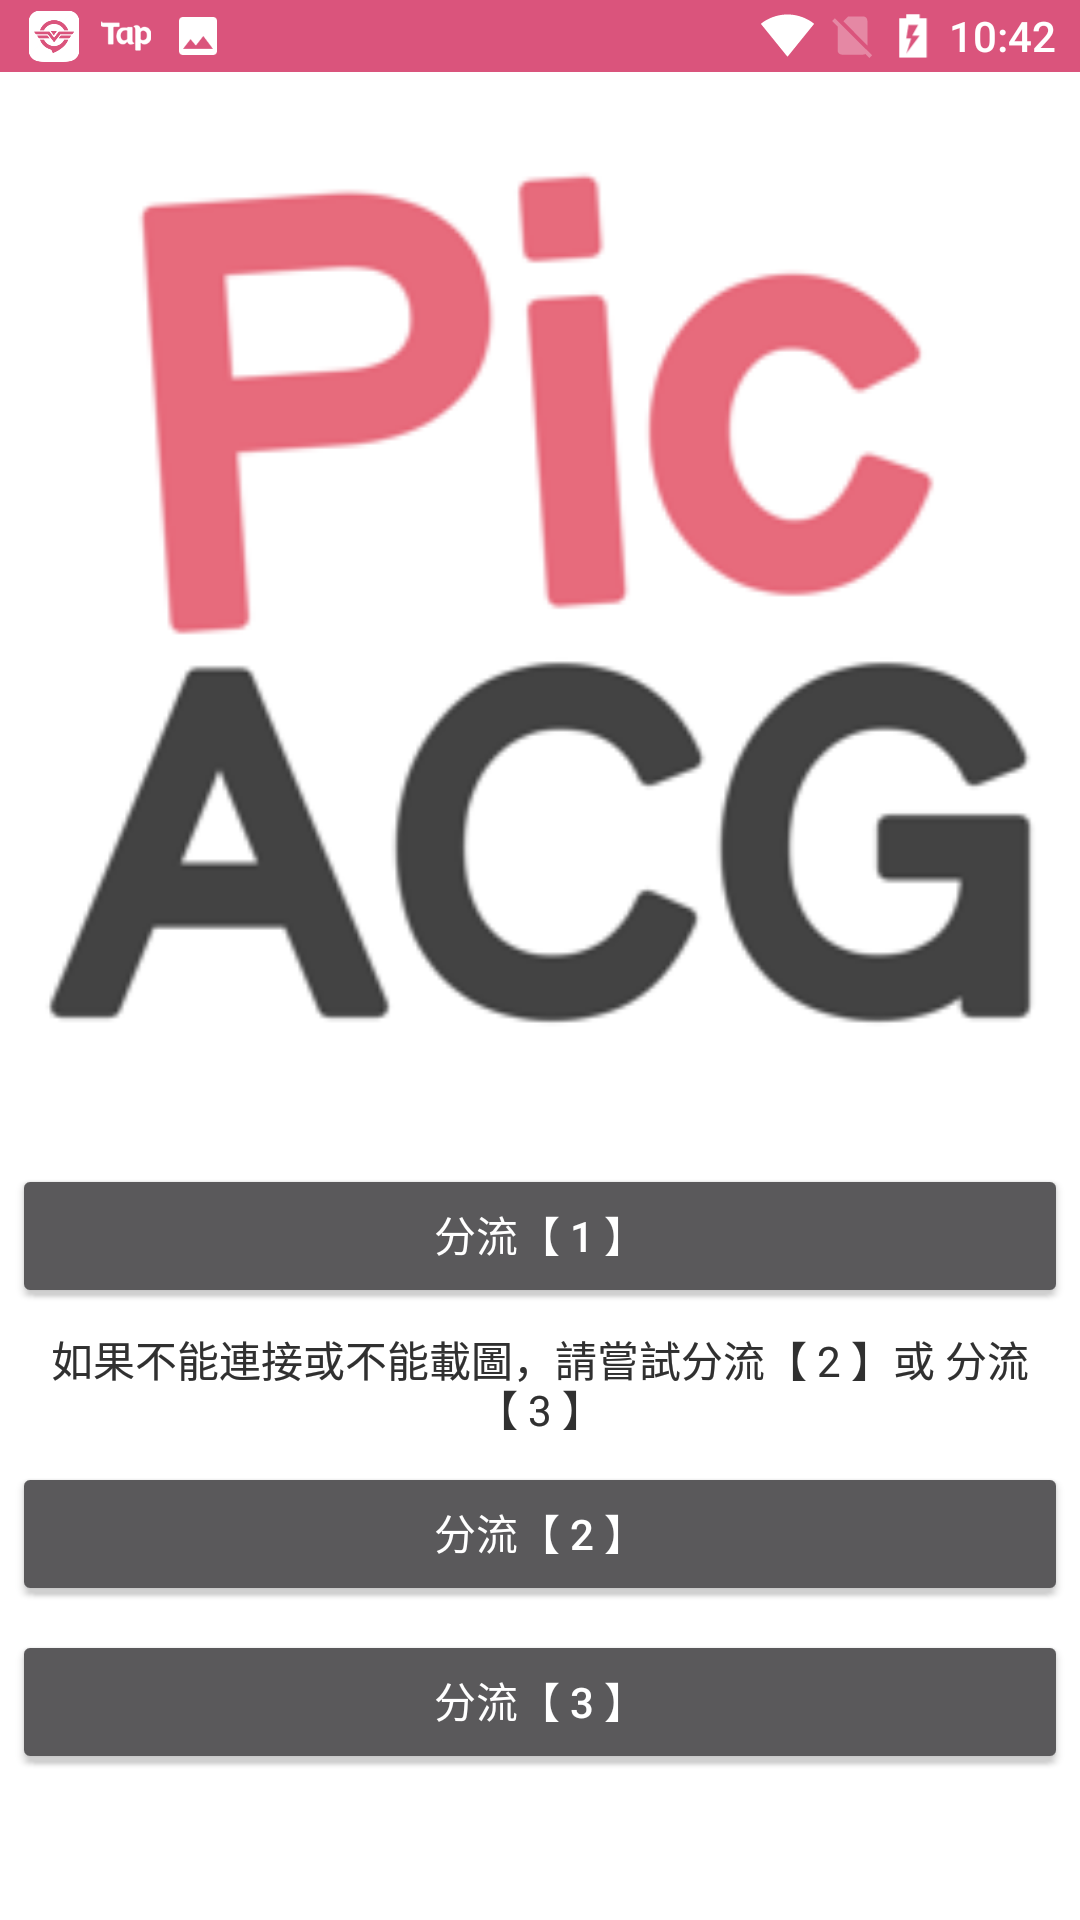 picacg 4.1.1.3版手机软件app截图